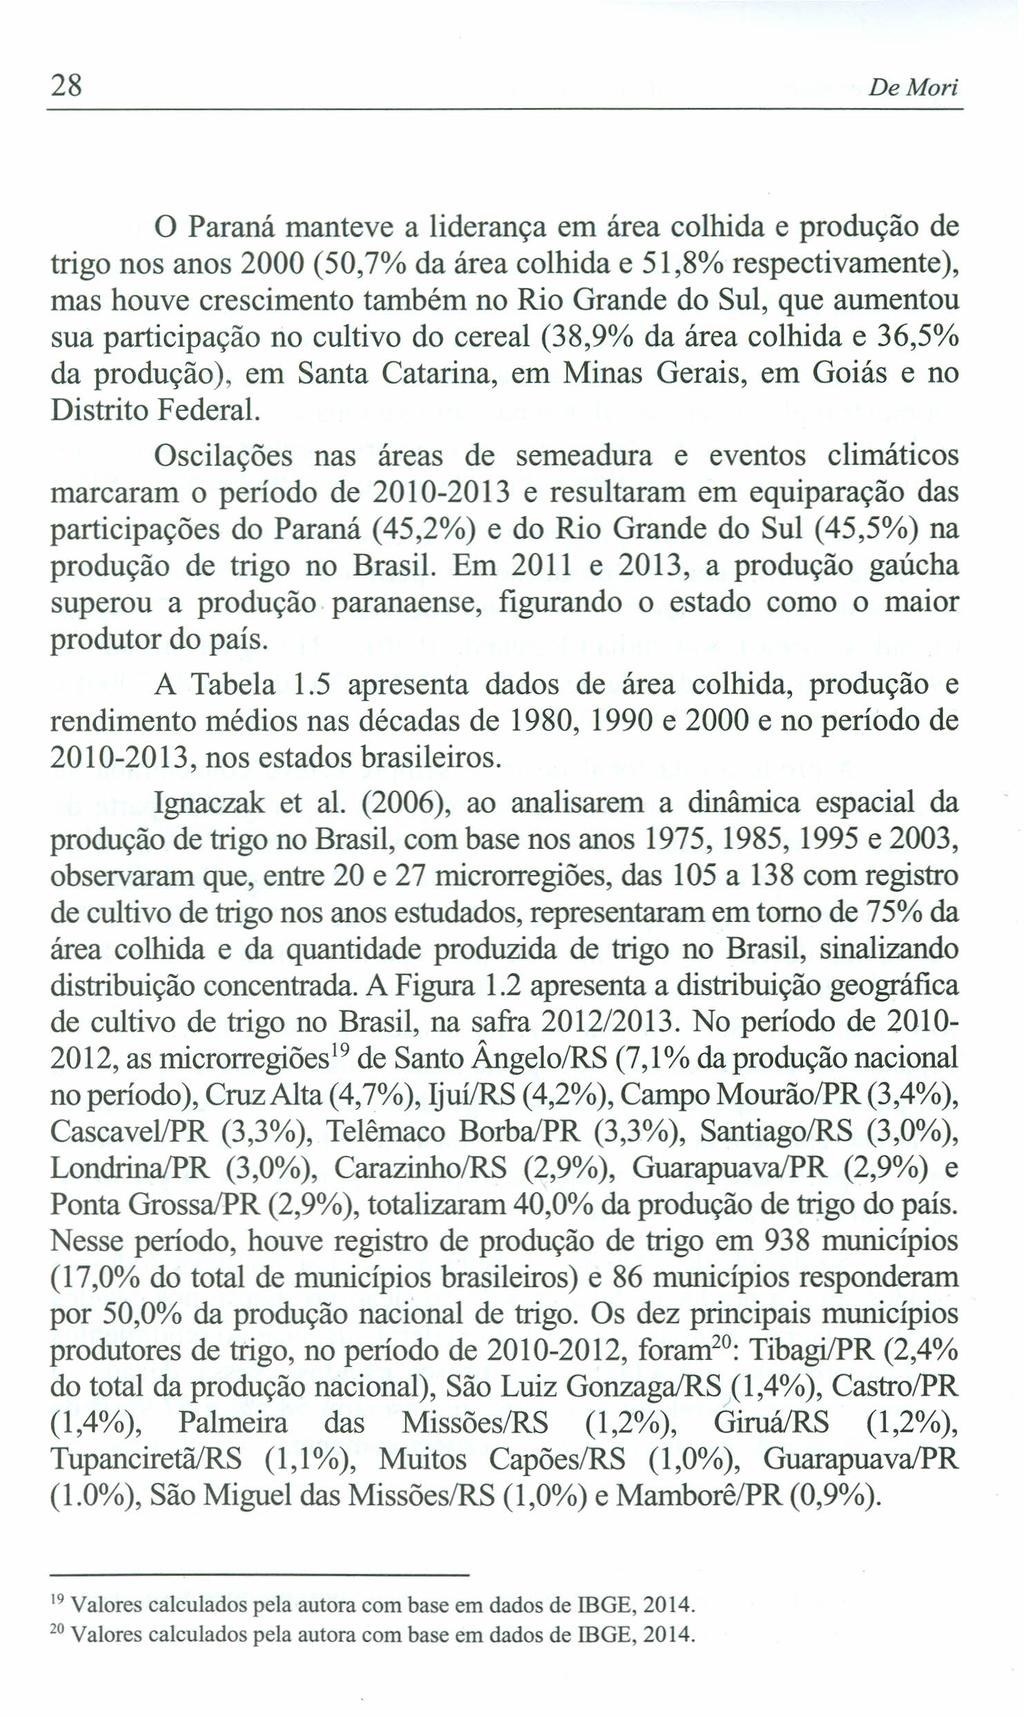 28 De Mori o Paraná manteve a liderança em área colhida e produção de trigo nos anos 2000 (50,7% da área colhida e 51,8% respectivamente), mas houve crescimento também no Rio Grande do Sul, que